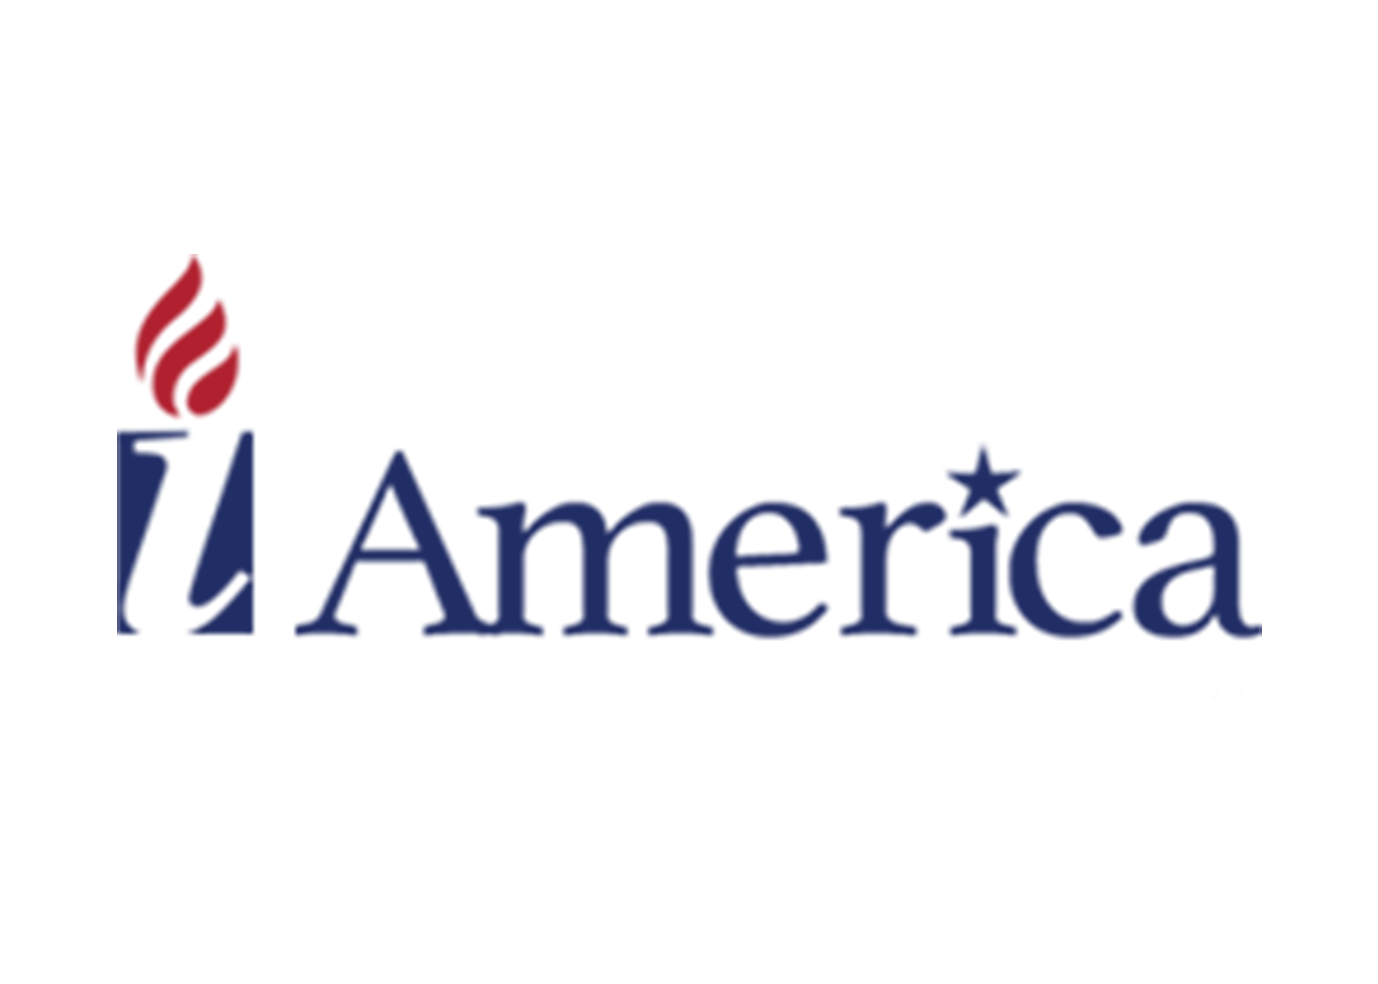 I America logo